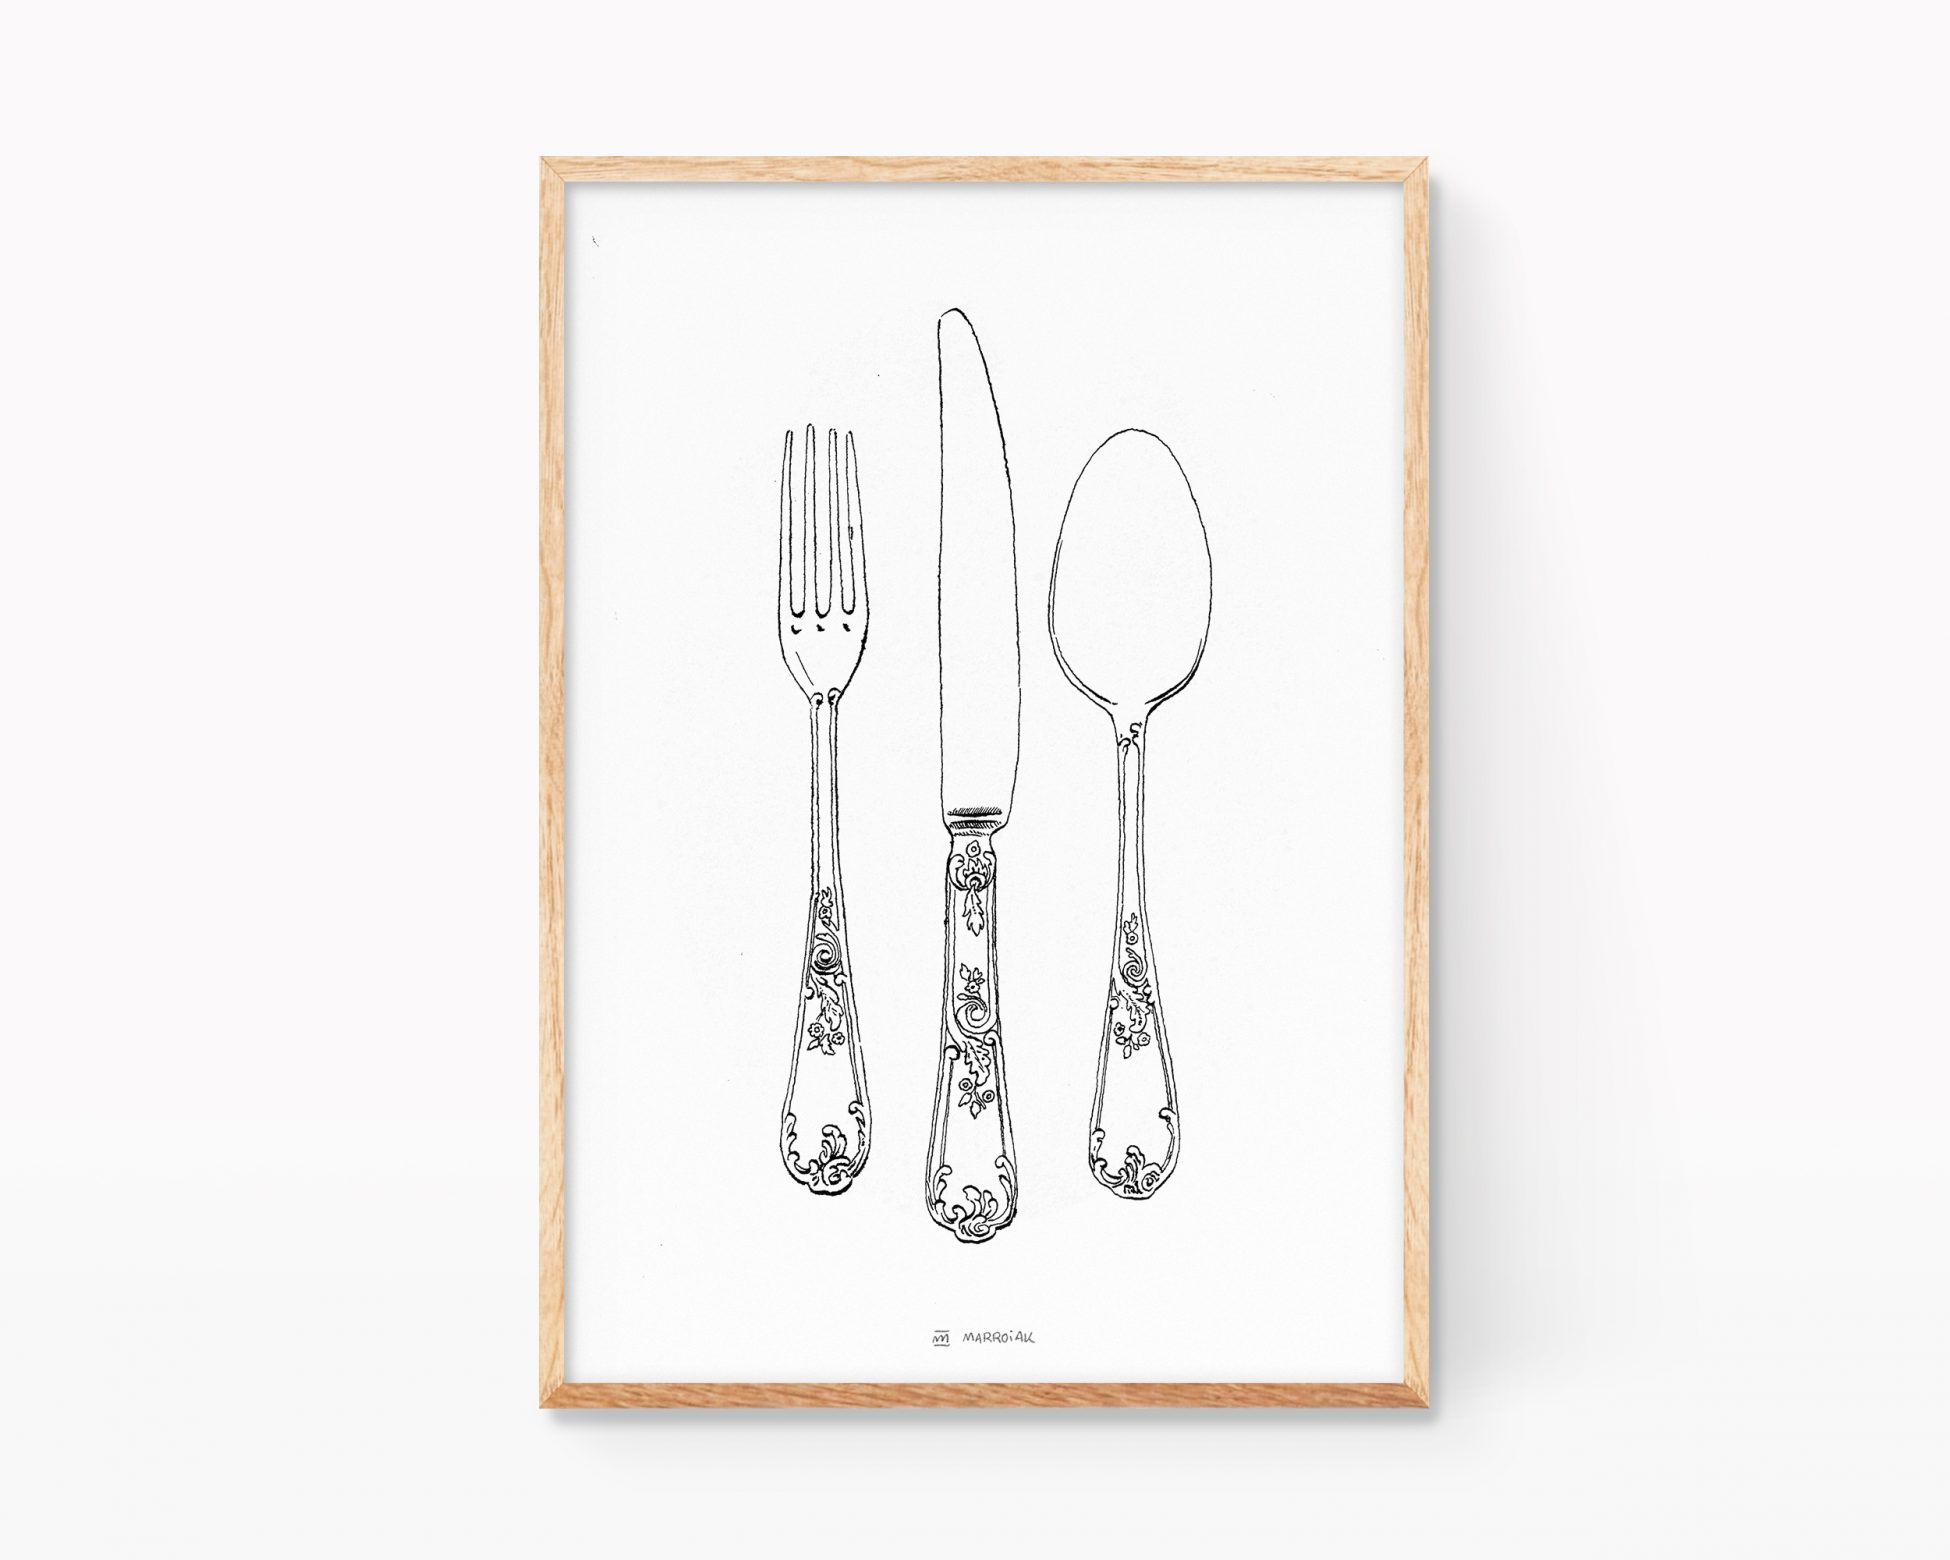 Cuadro decorativo para enmarcar con una print de dibujos en blanco y negro de cubiertos de mesa como el cuchillo, tenedor y cuchara. Posters de comida para restaurantes y grastrobares. Arte original